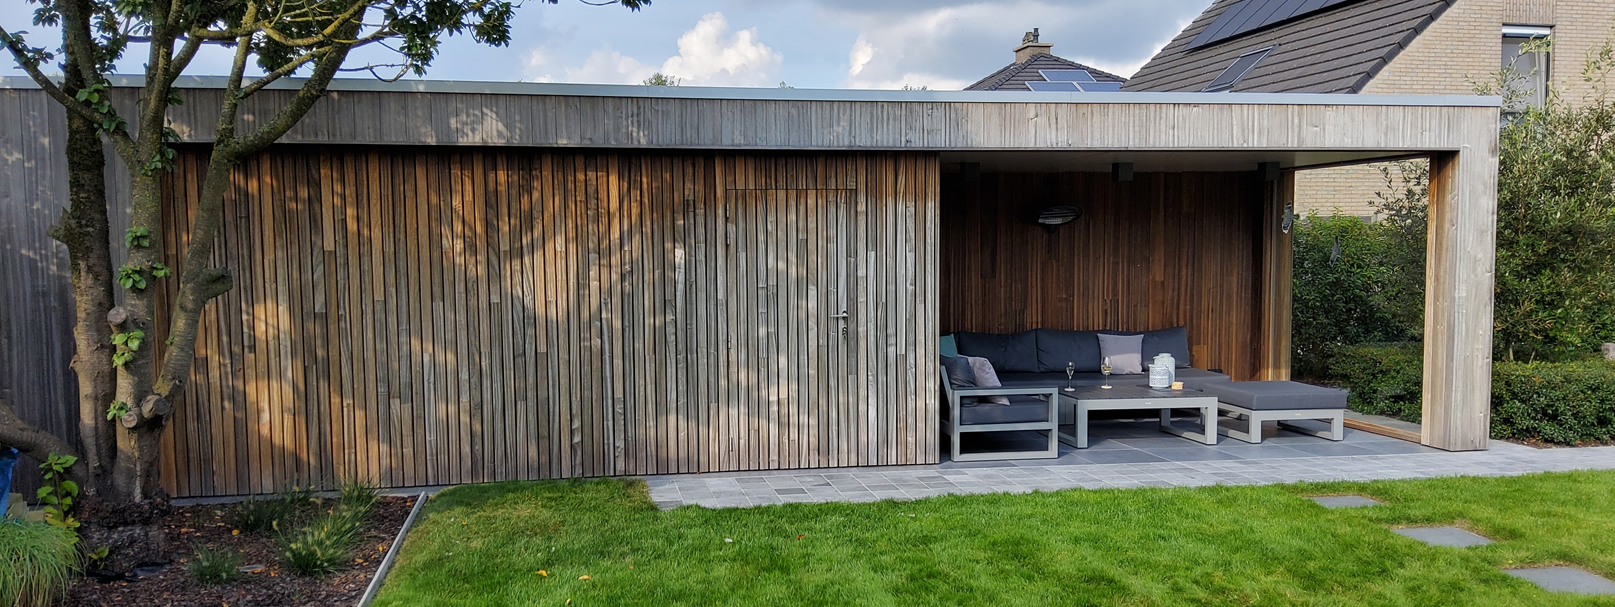 Modern bijgebouw met overkapping terras in padouk regio Gent